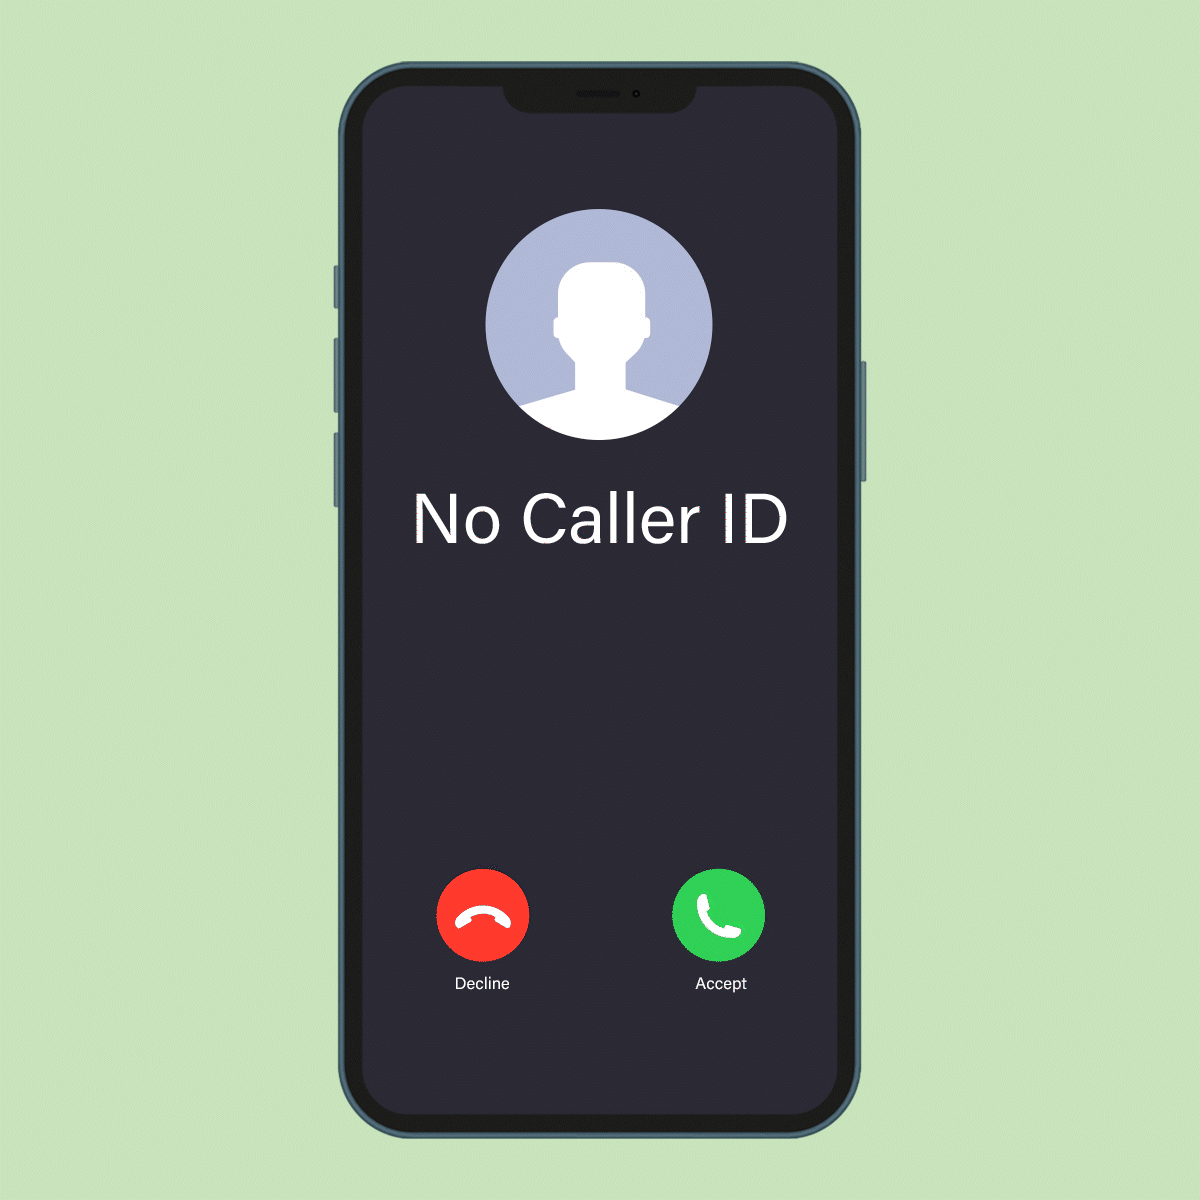 the caller